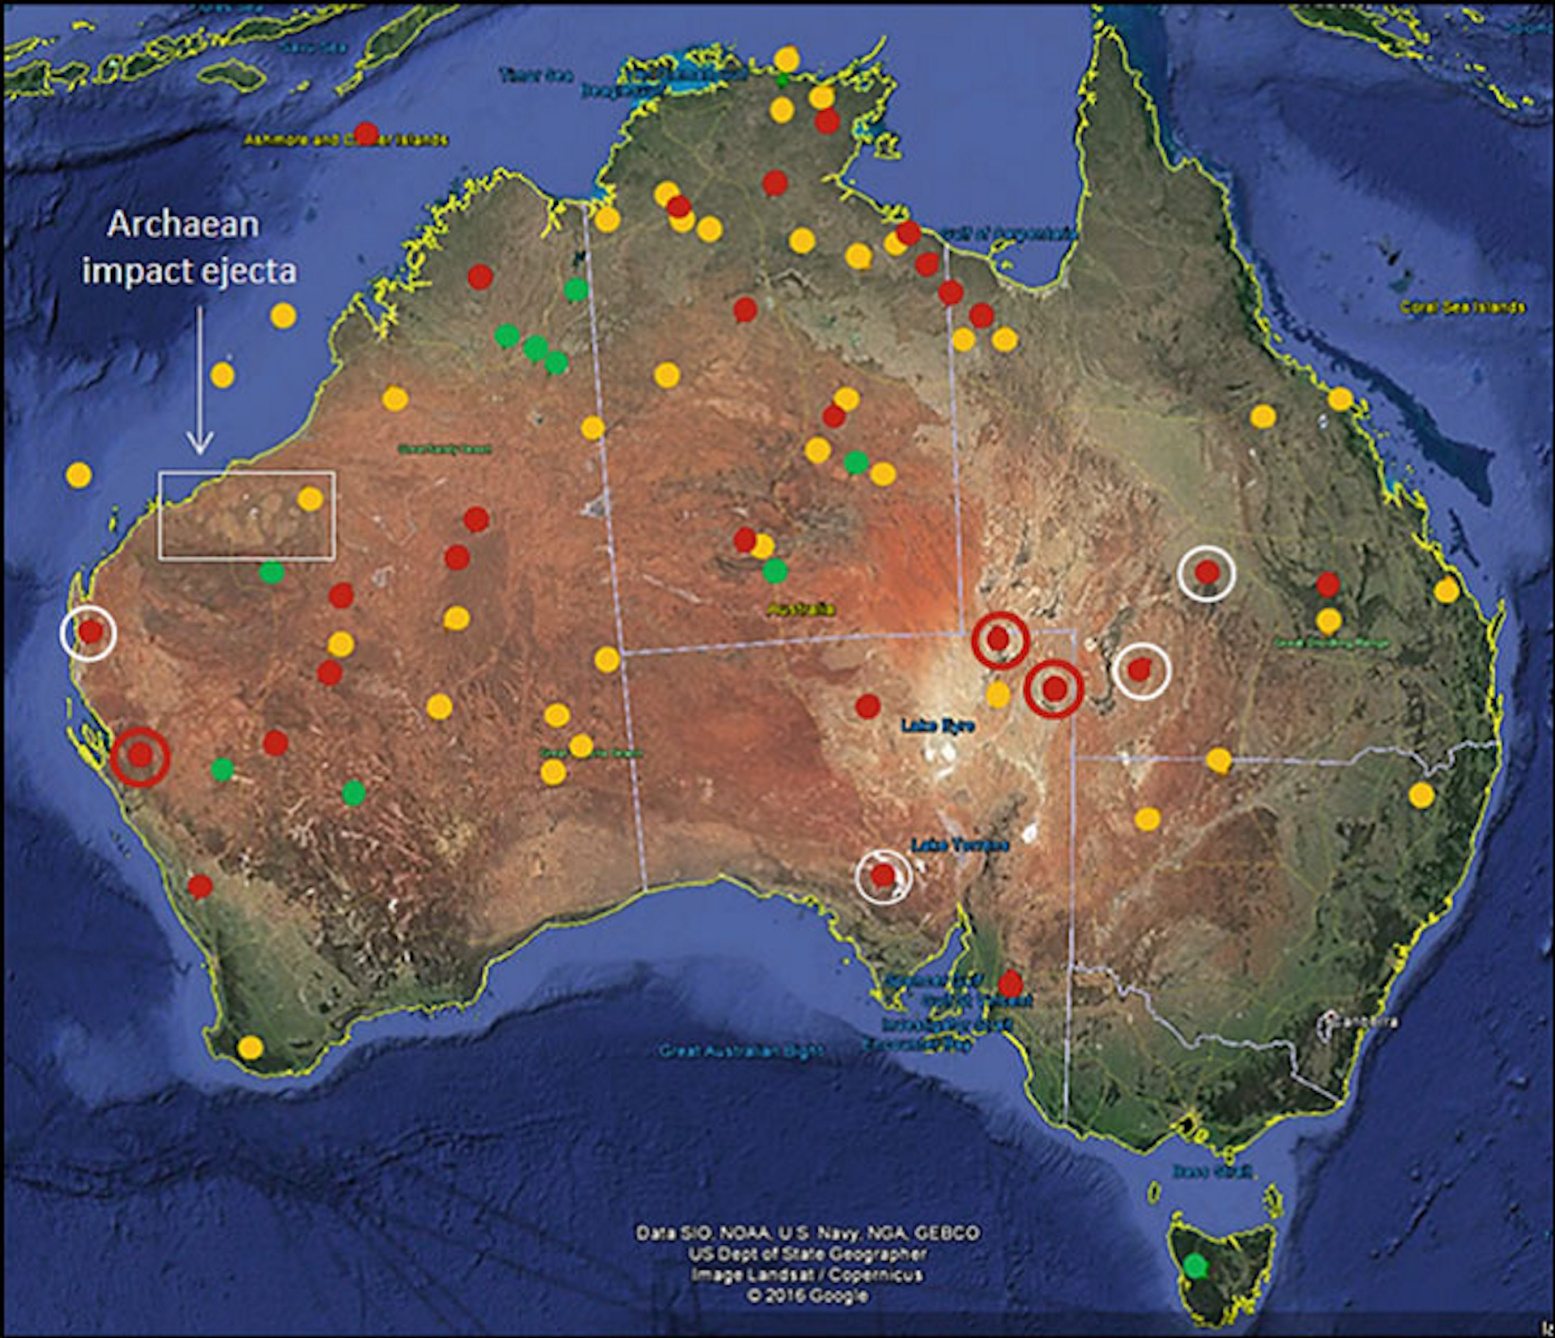 該地圖顯示了澳大利亞大陸和近海的不確定、可能或可能撞擊起源的圓形結構的分佈。 綠點代表已確認的撞擊坑。 紅點代表已確認的寬度超過 100 公里的撞擊結構，而白圈內的紅點寬度超過 50 公里。 黃點代表可能的撞擊結構。